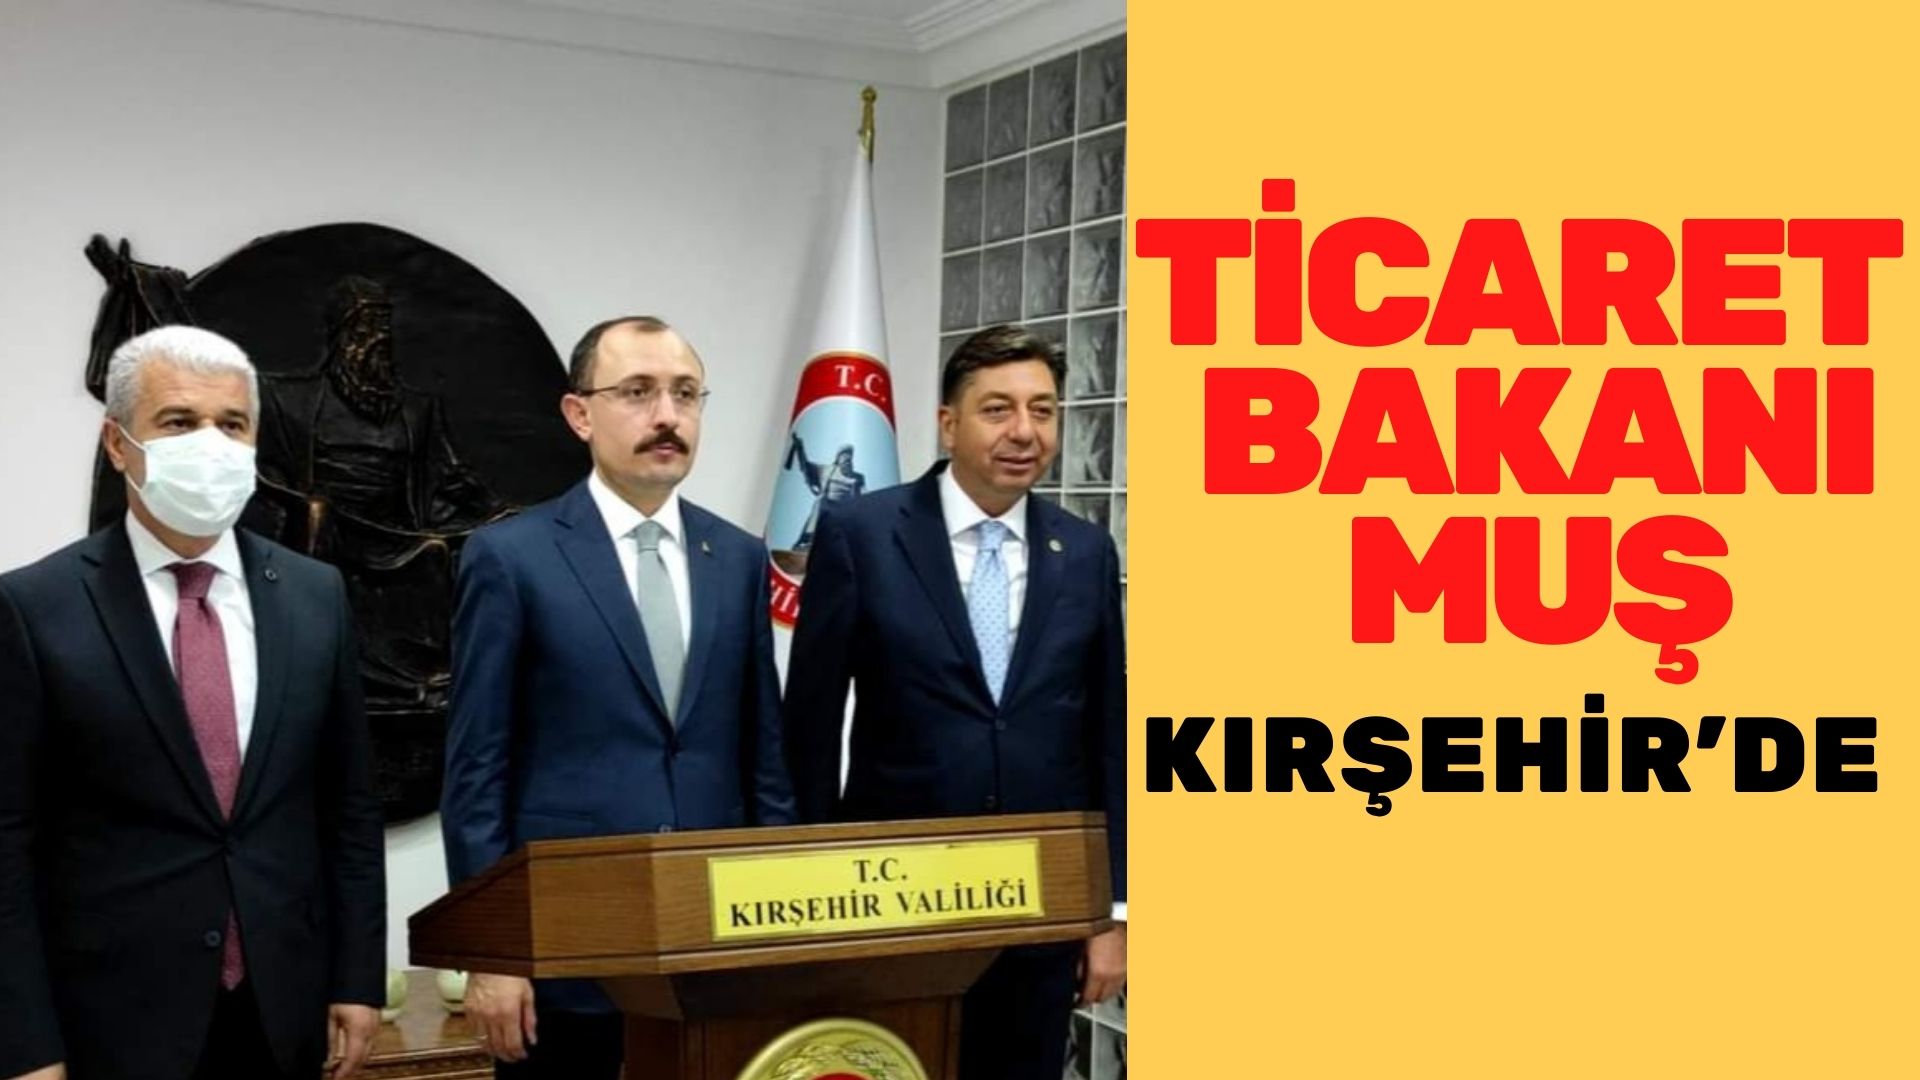 Ticaret Bakanı Muş Kırşehir’de